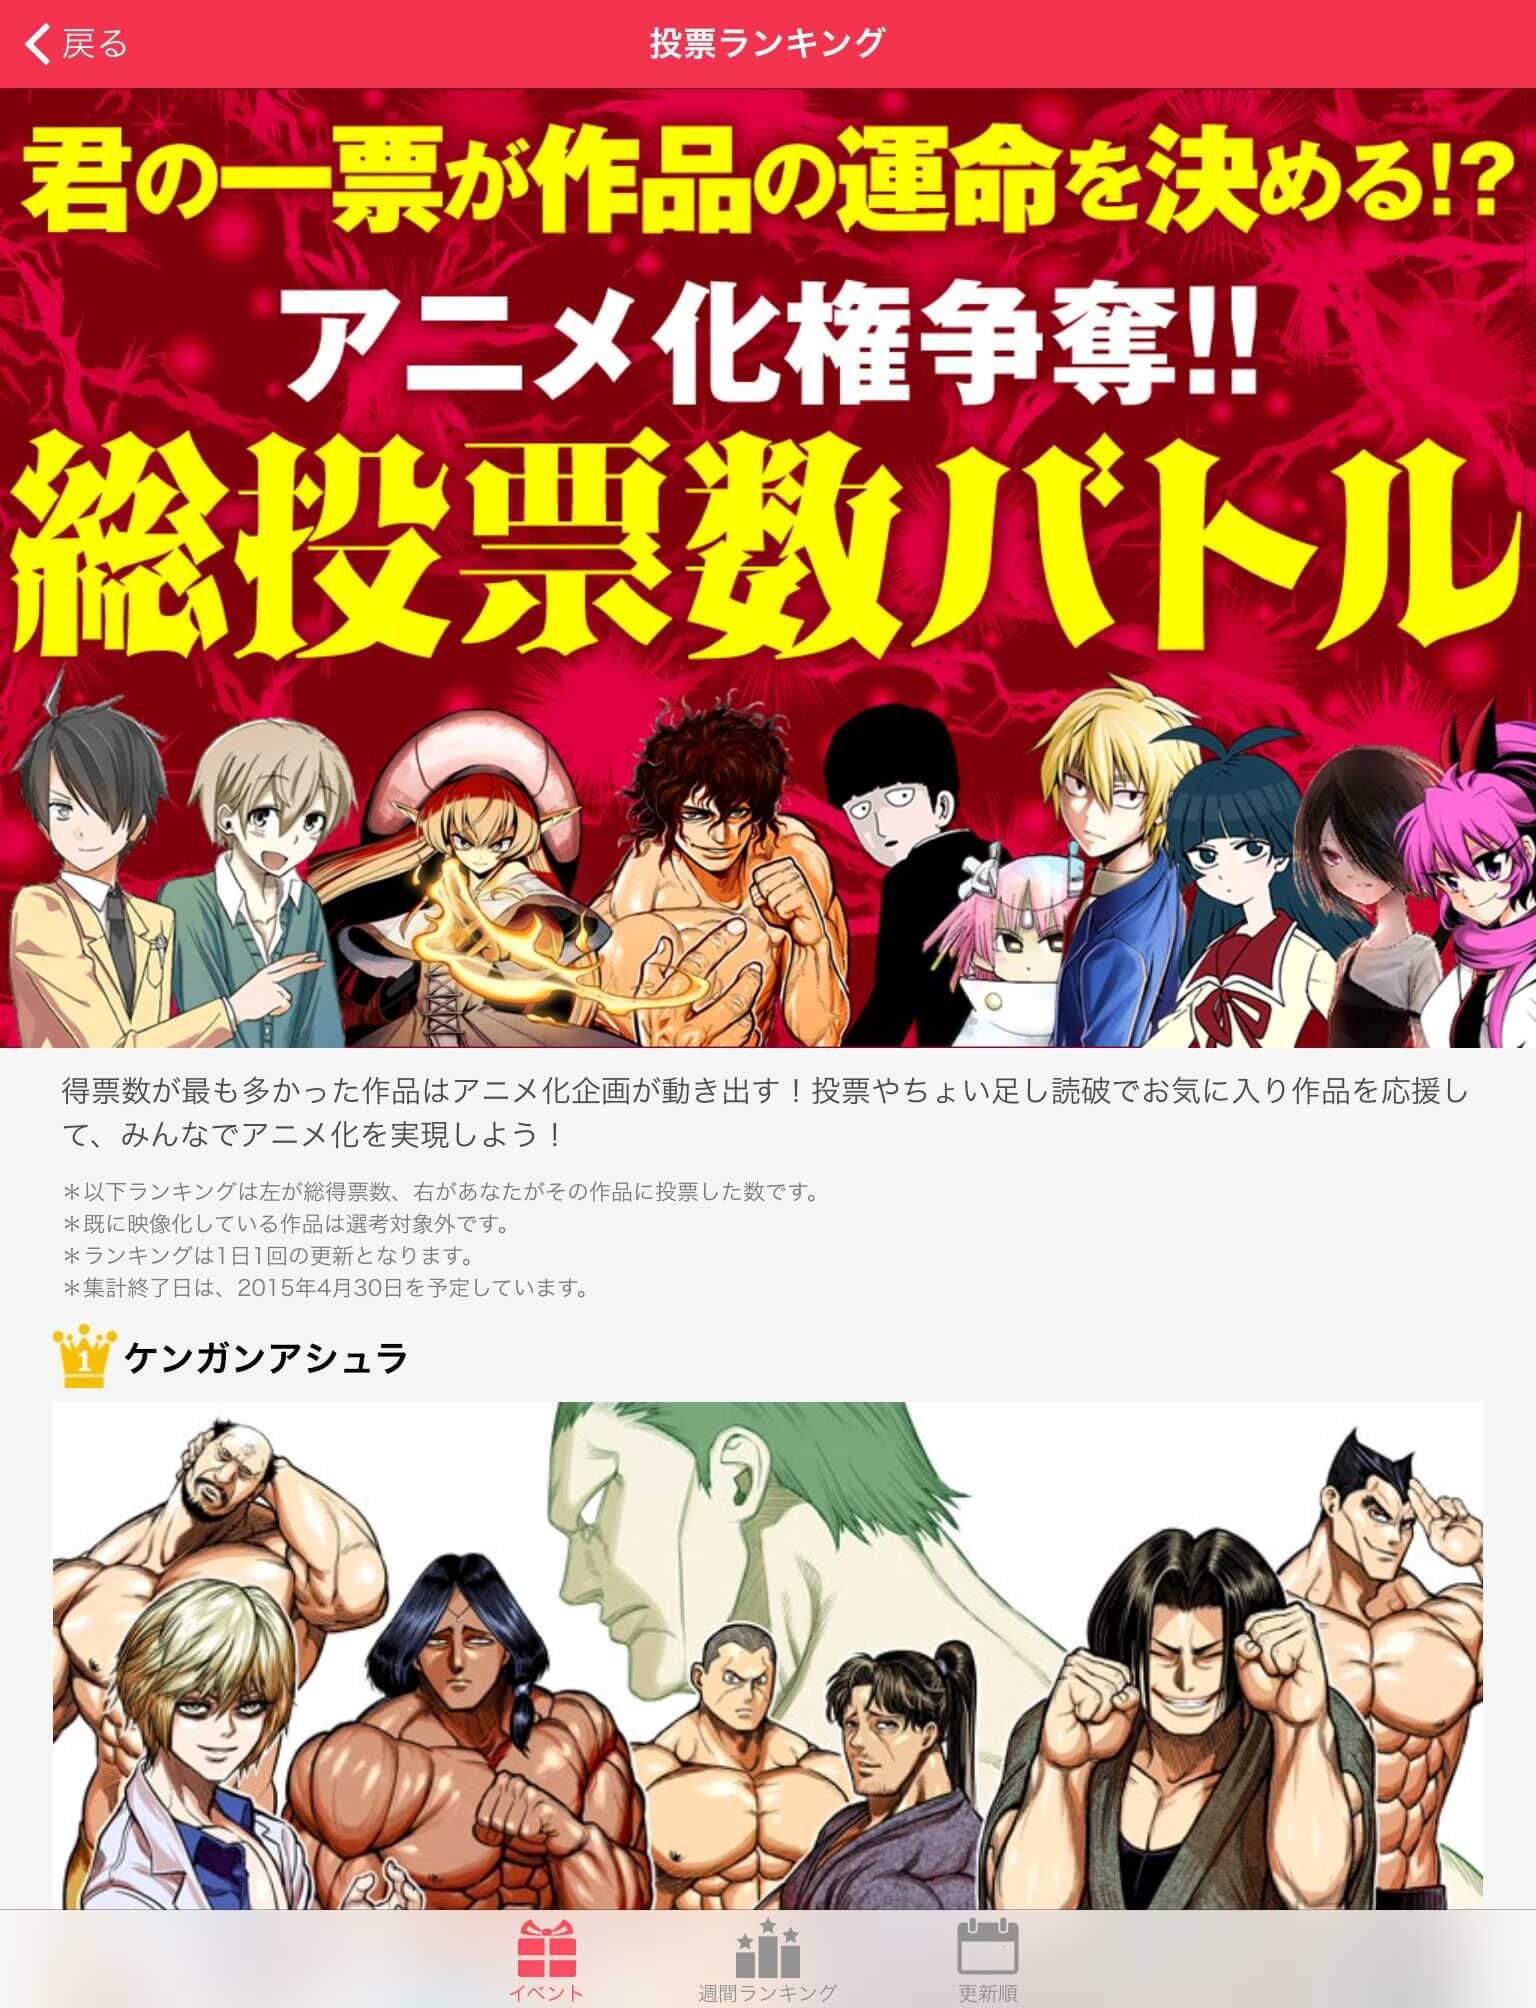 Leitores Ura Sunday escolhem próximo Anime